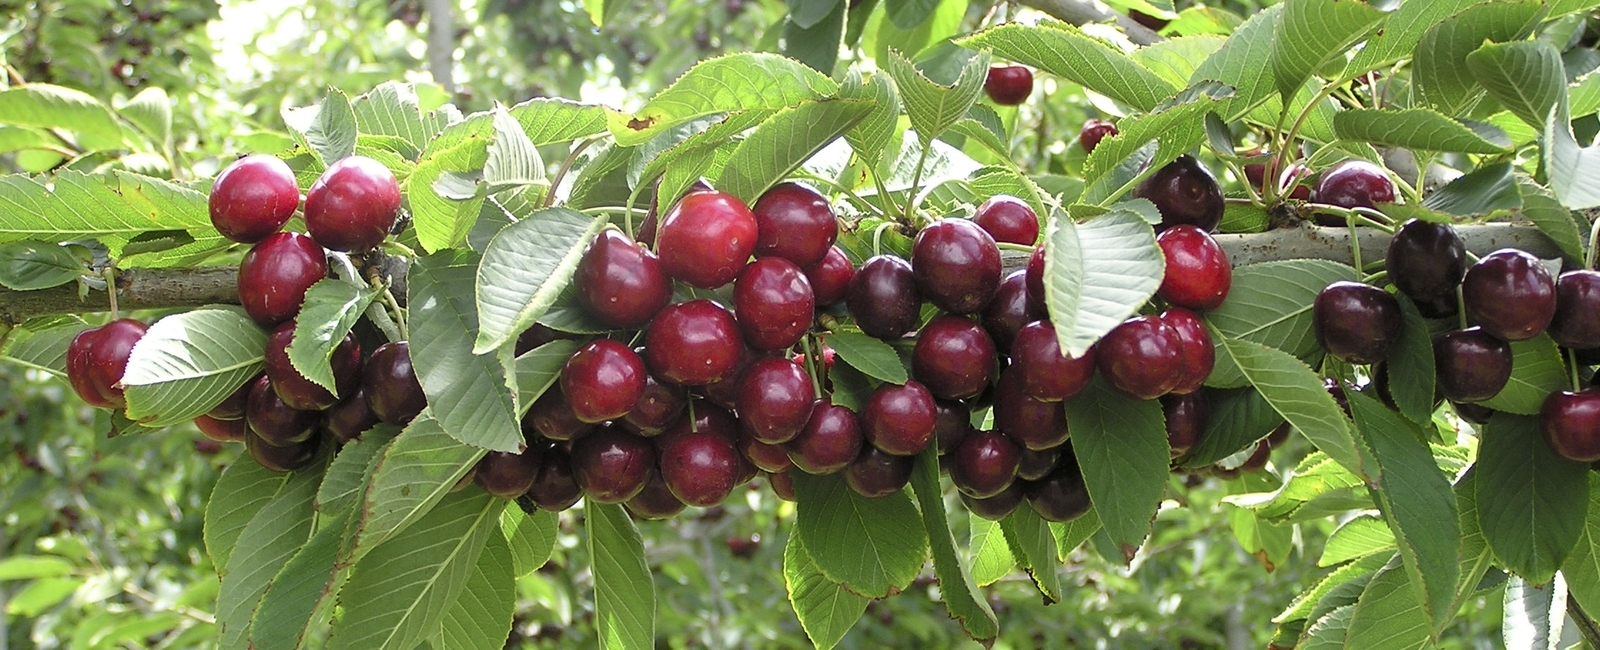 Cherry crop nutrition